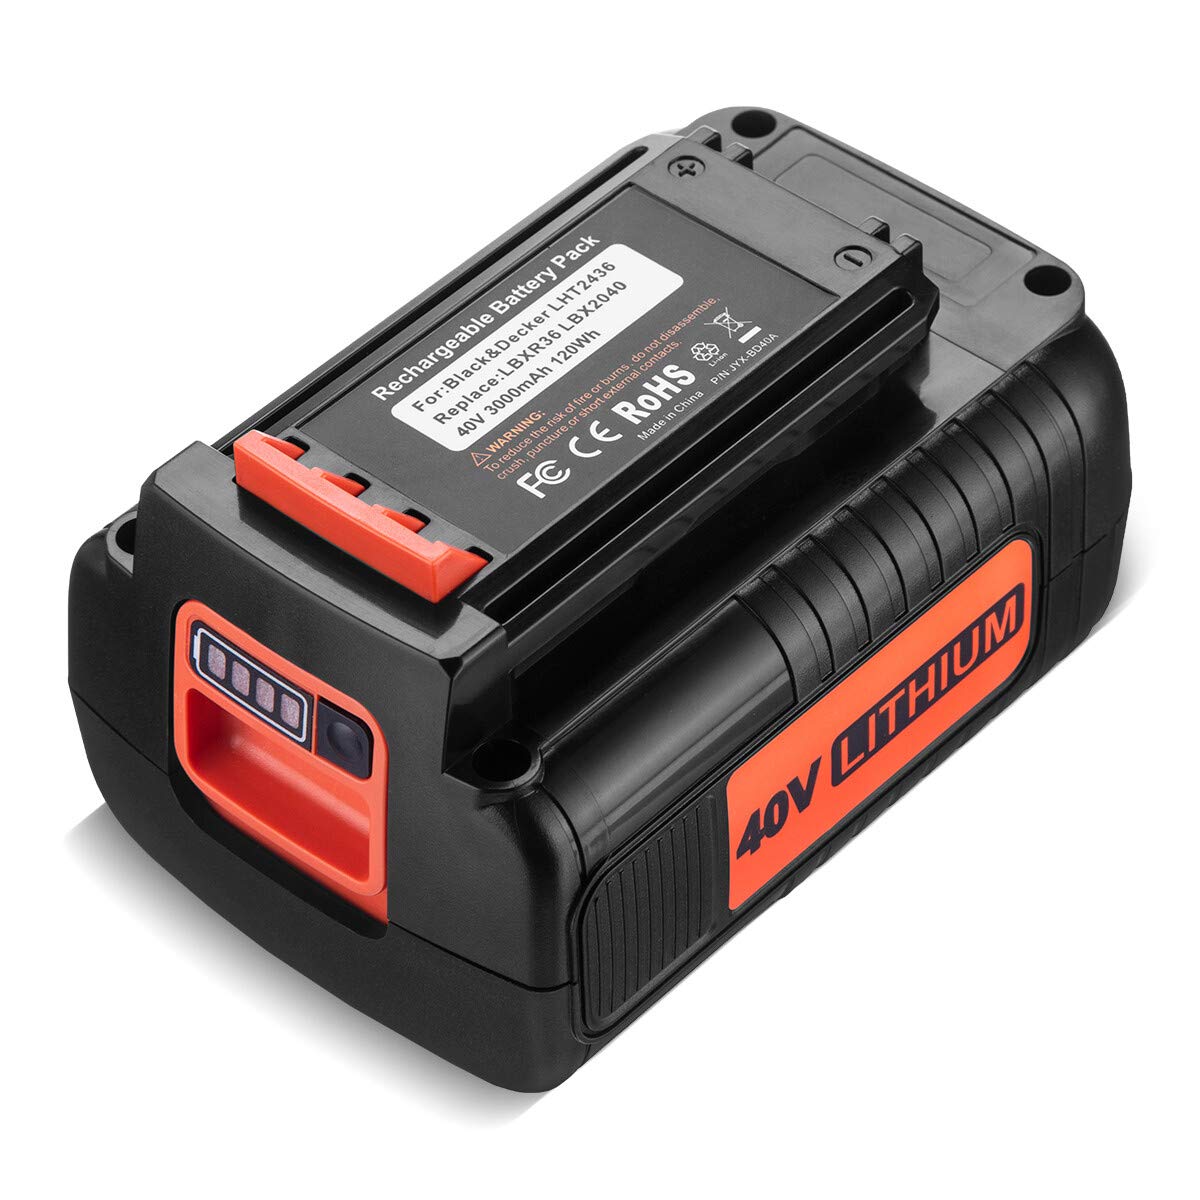 Black & Decker LST420 Battery - Power Tool Batteries